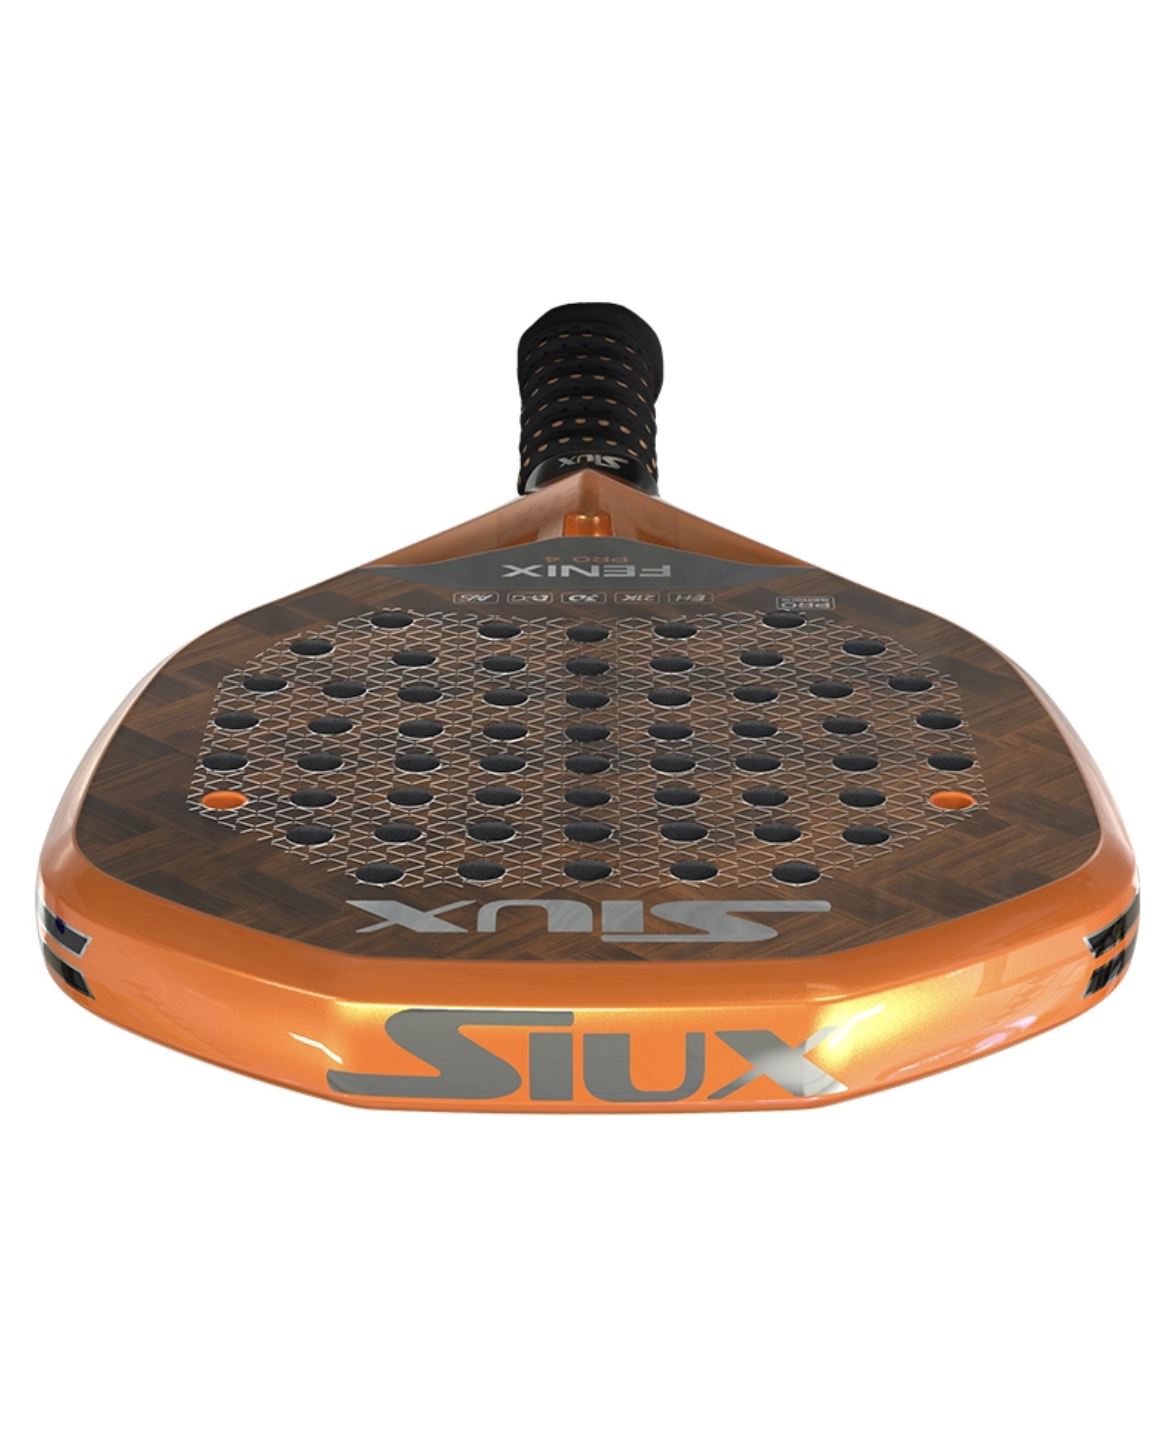 Siux Fenix 4 Pro Padelbat